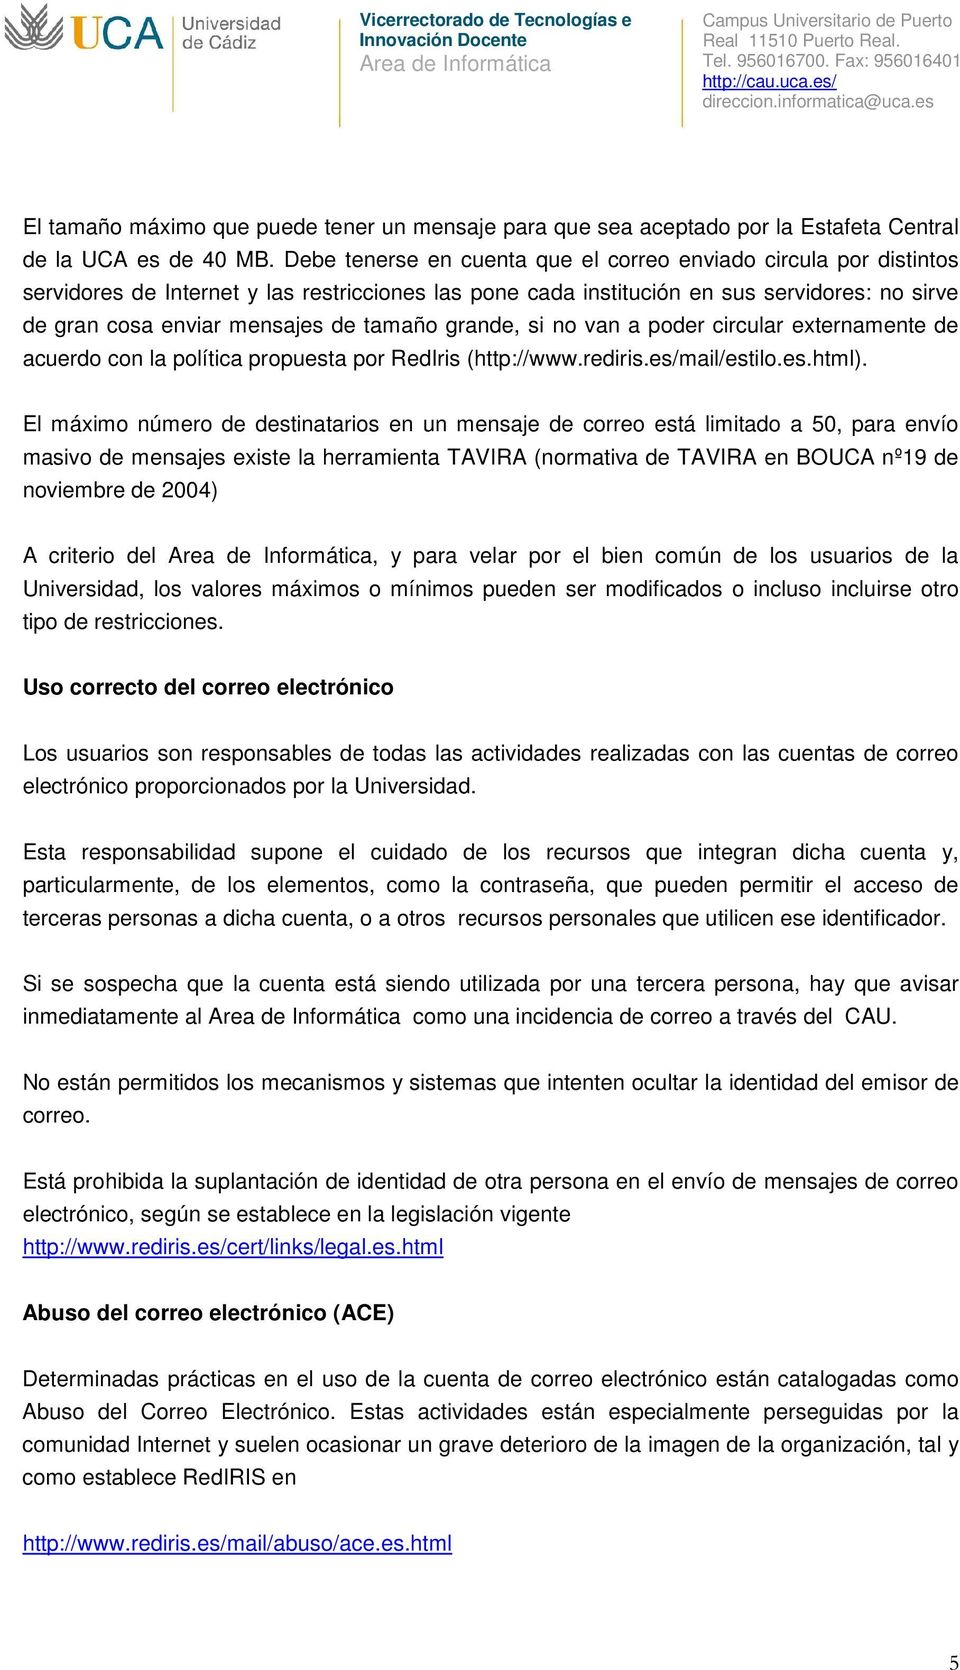 tamaño grande, si no van a poder circular externamente de acuerdo con la política propuesta por RedIris (http://www.rediris.es/mail/estilo.es.html).